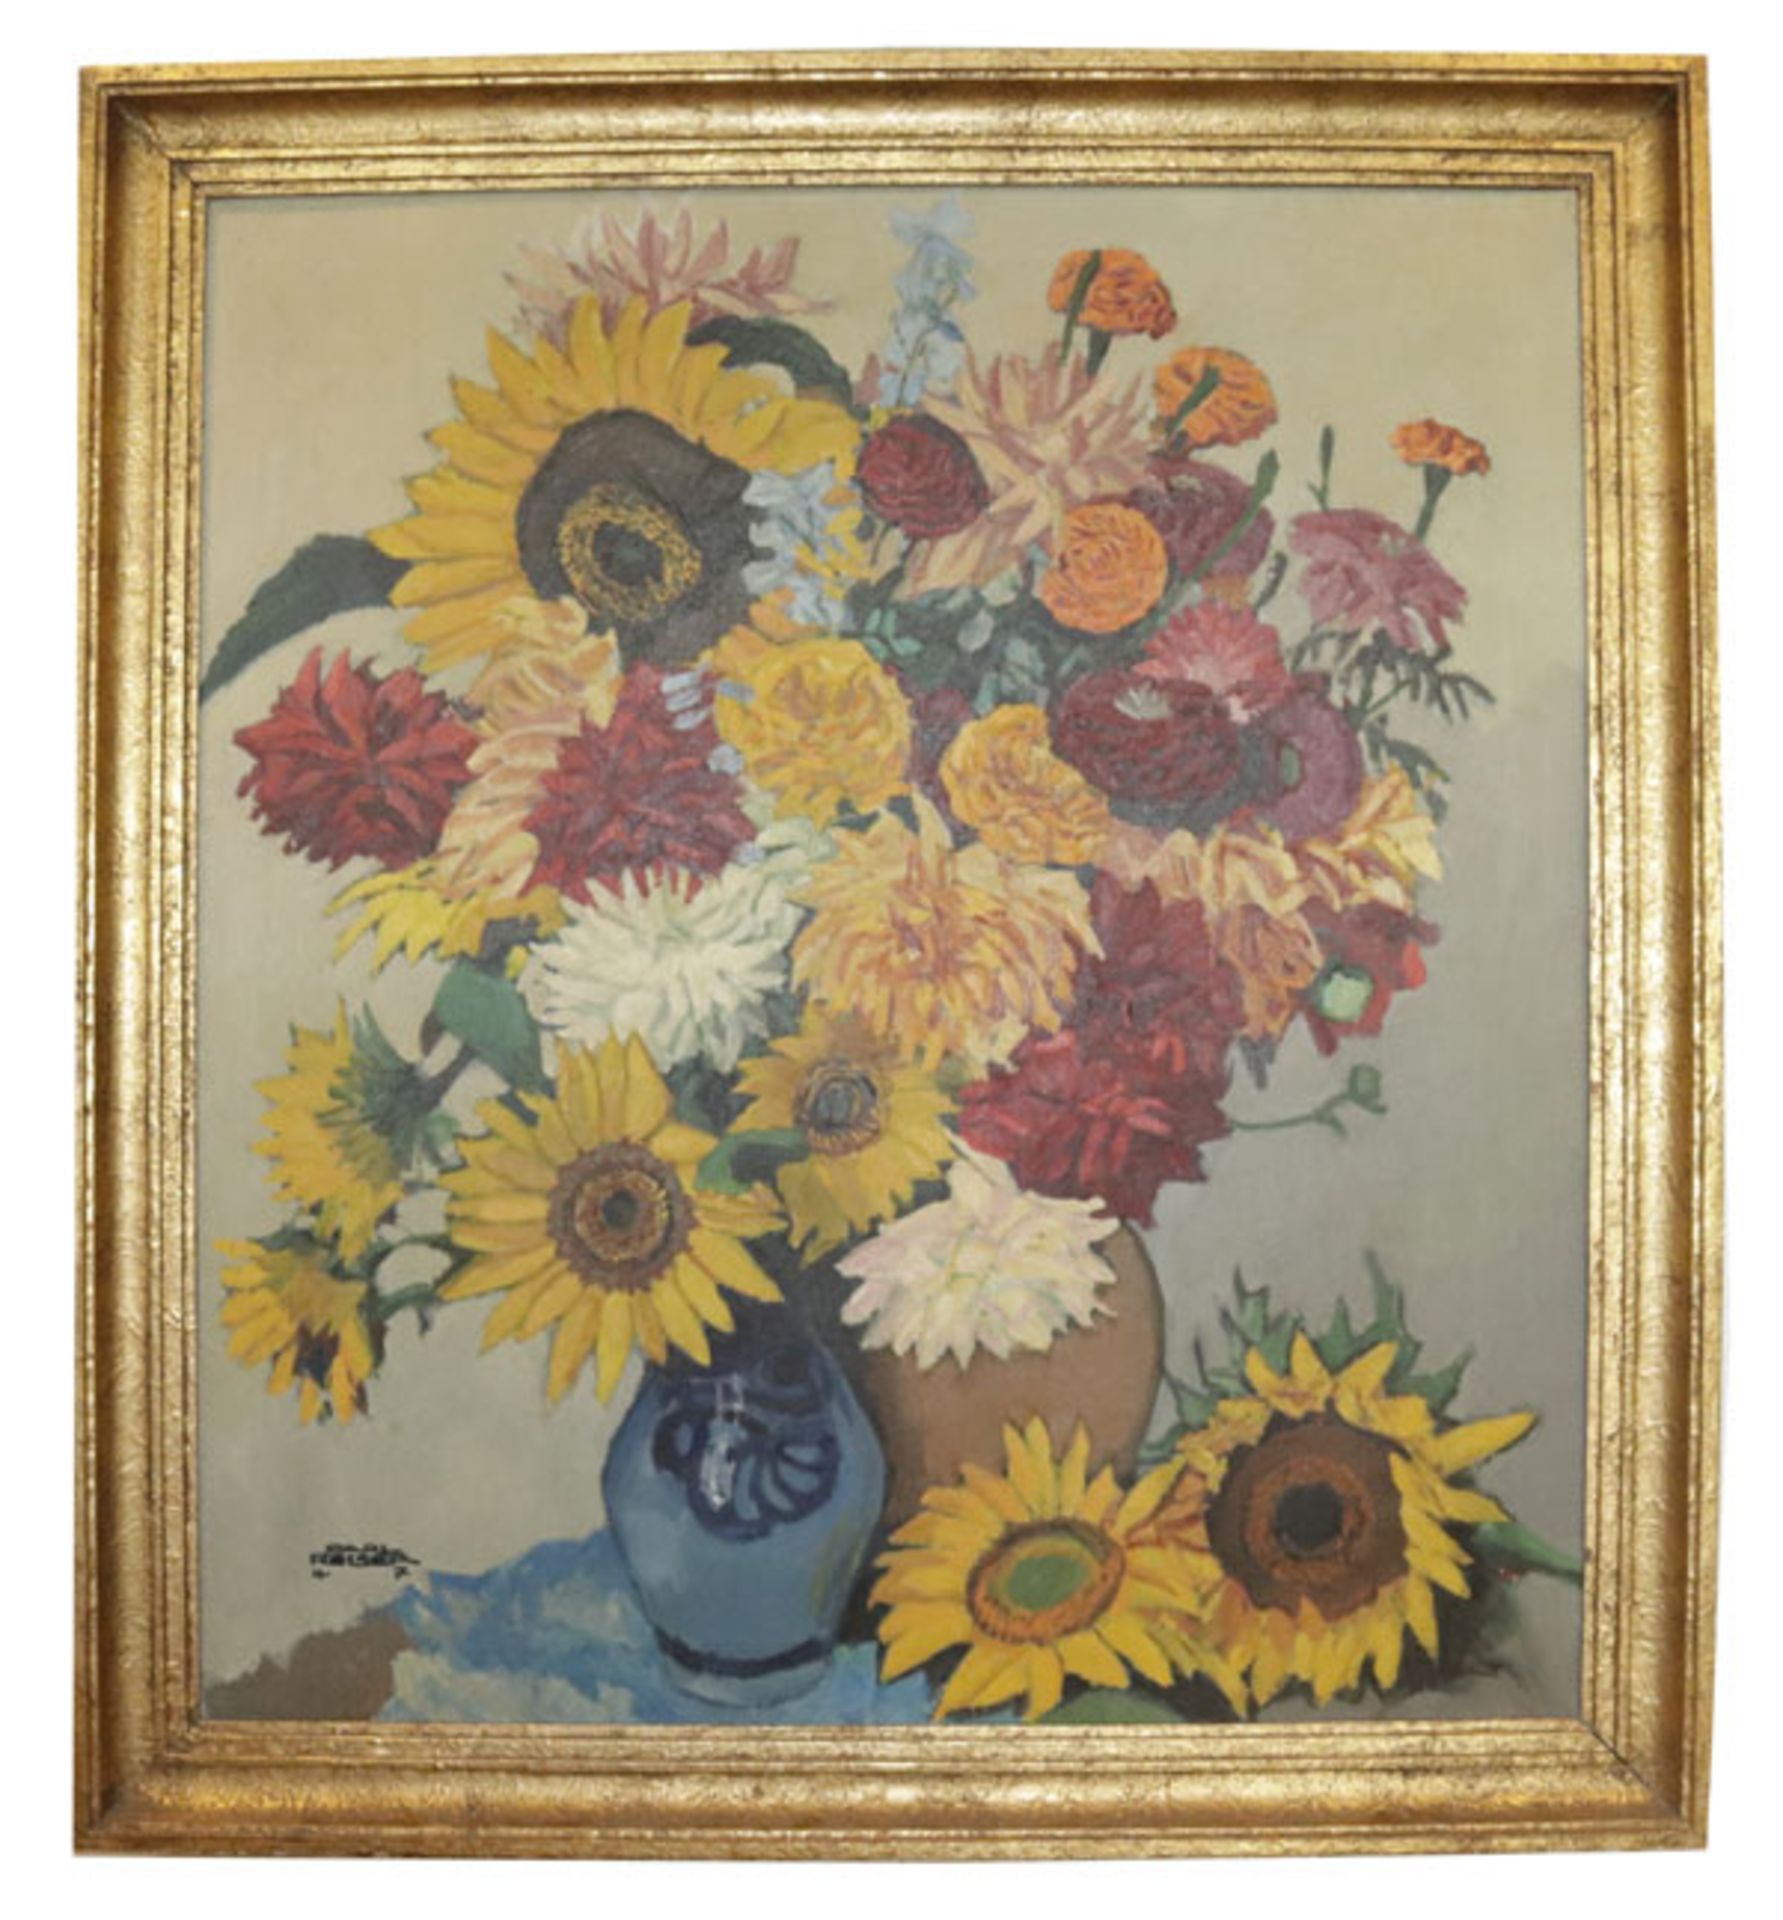 Gemälde ÖL/LW 'Blumenstillleben mit Sonnenblumen und Dahlien', signiert Carl Reiser 47, * 1877 Parte